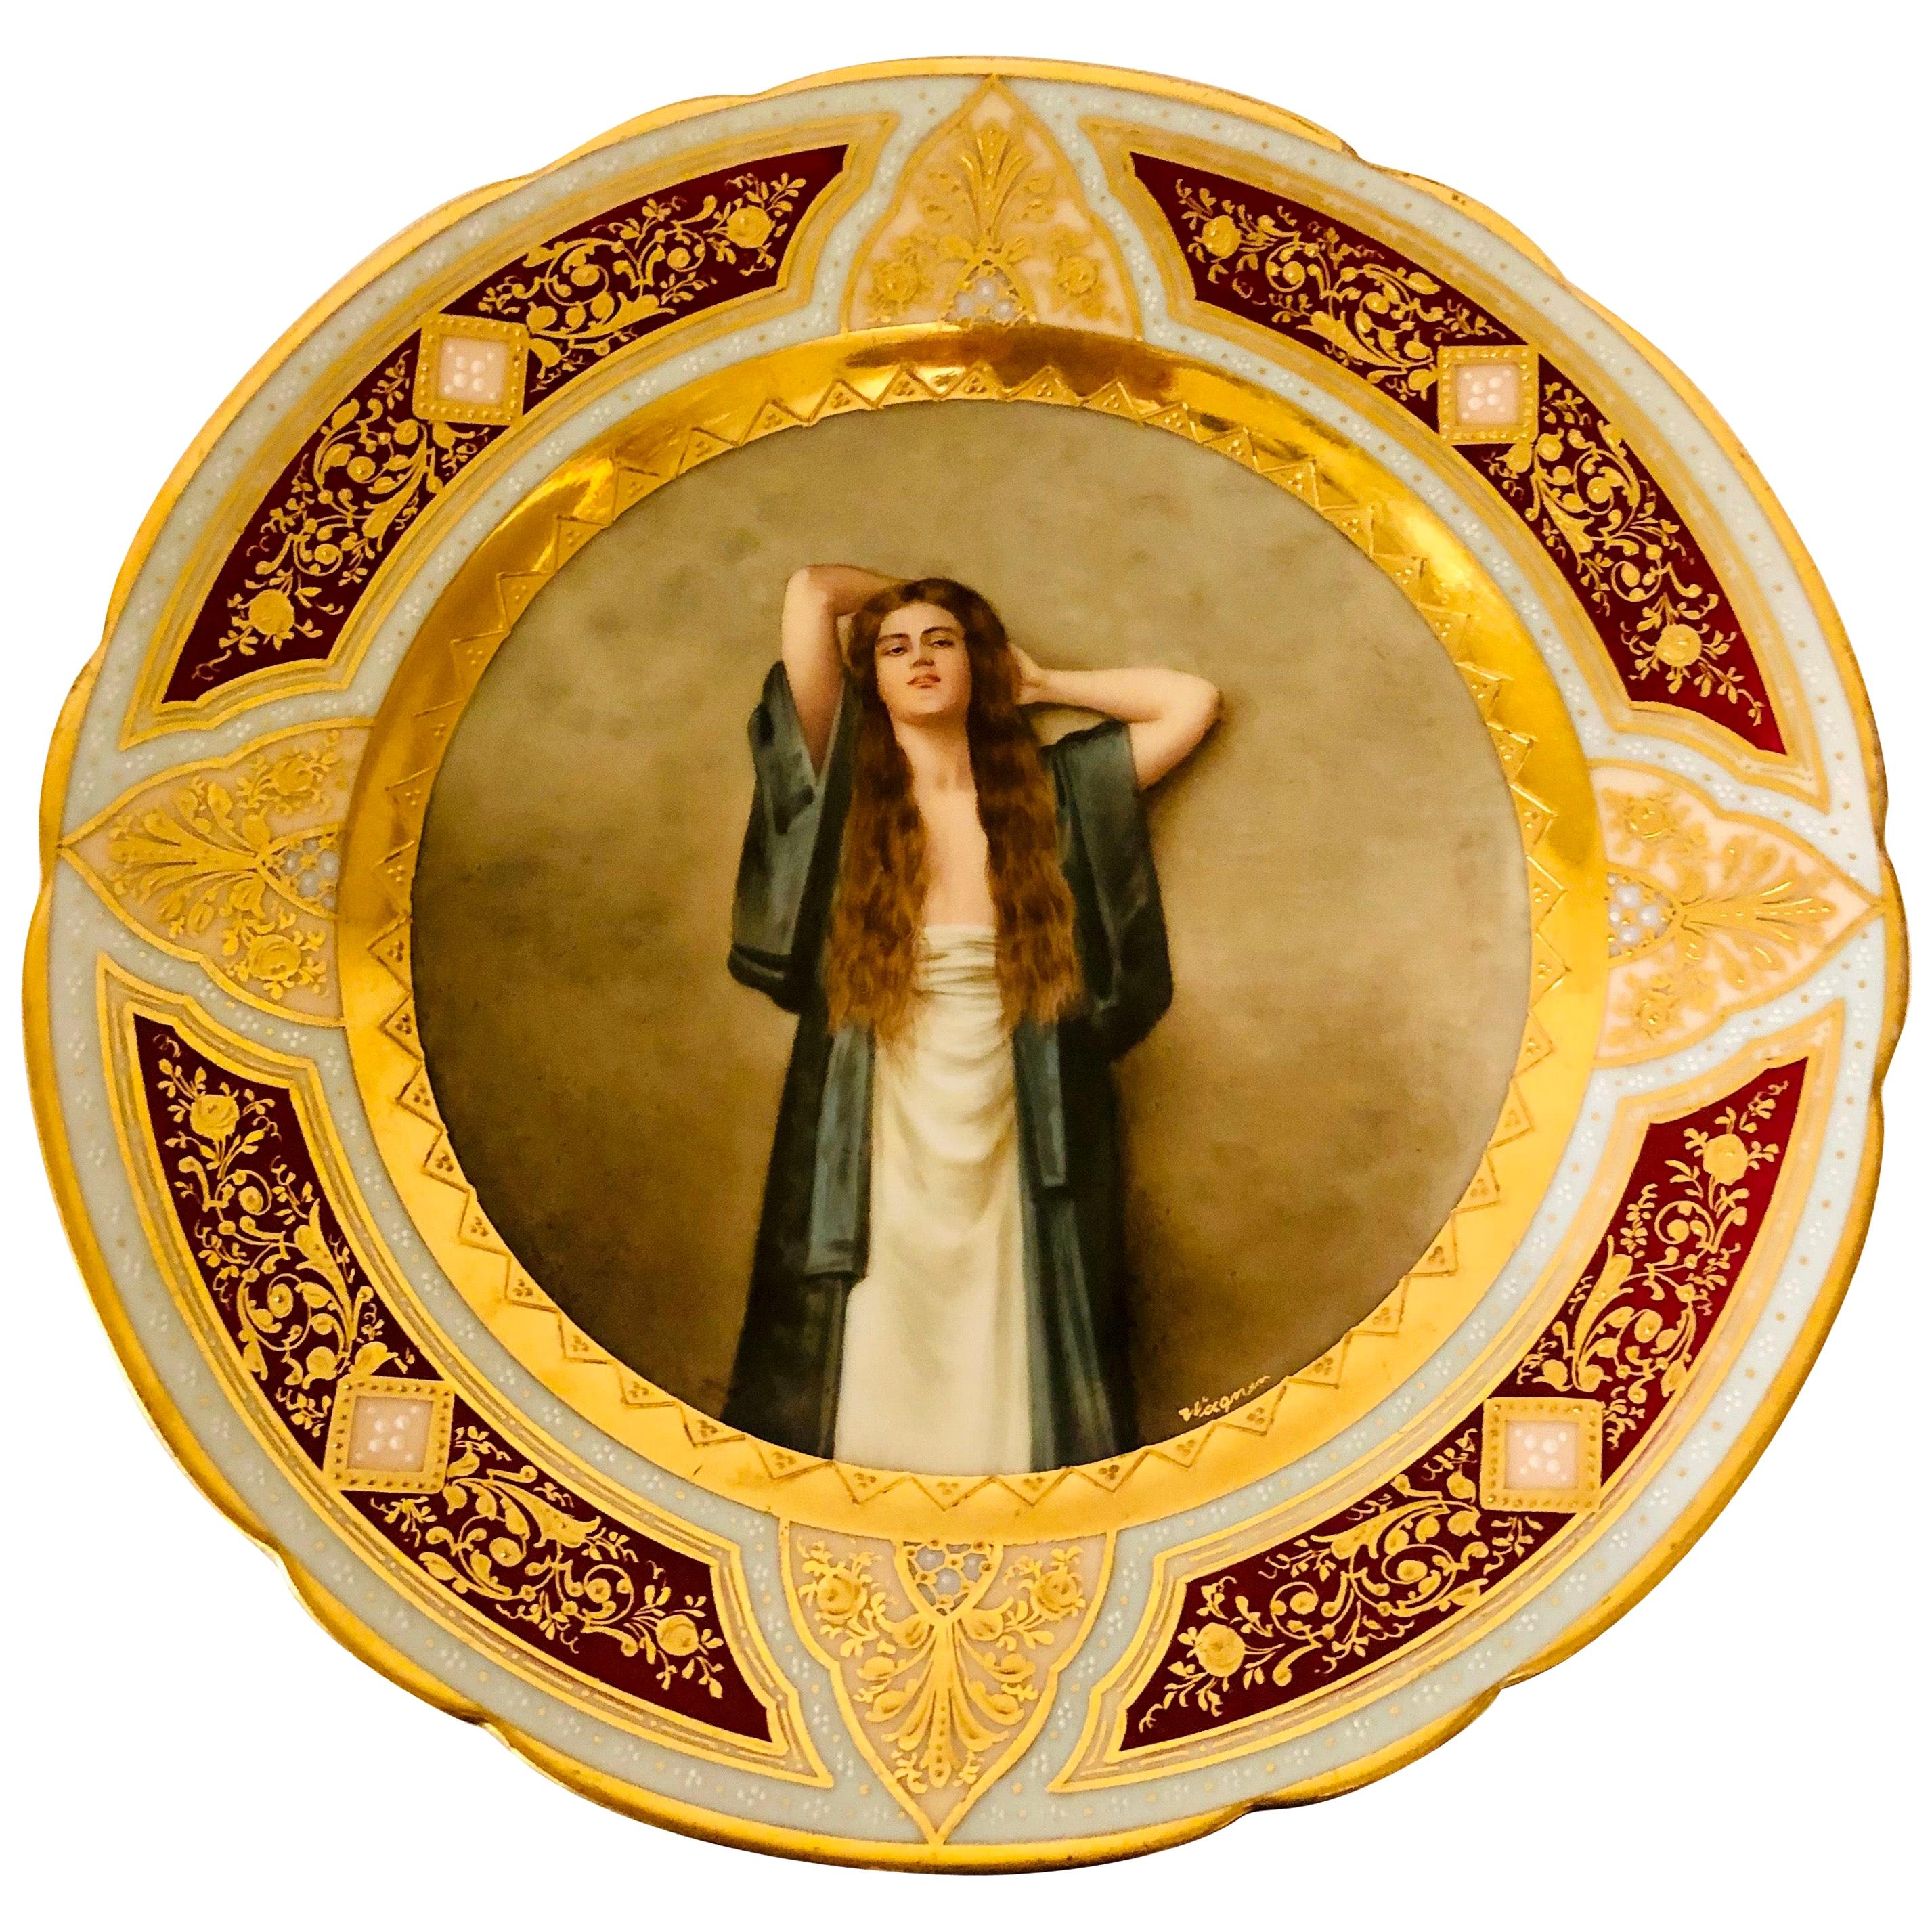 Assiette de cabinet « Royal Vienna » avec bardot signée Wagner, femme aux cheveux rouges longs